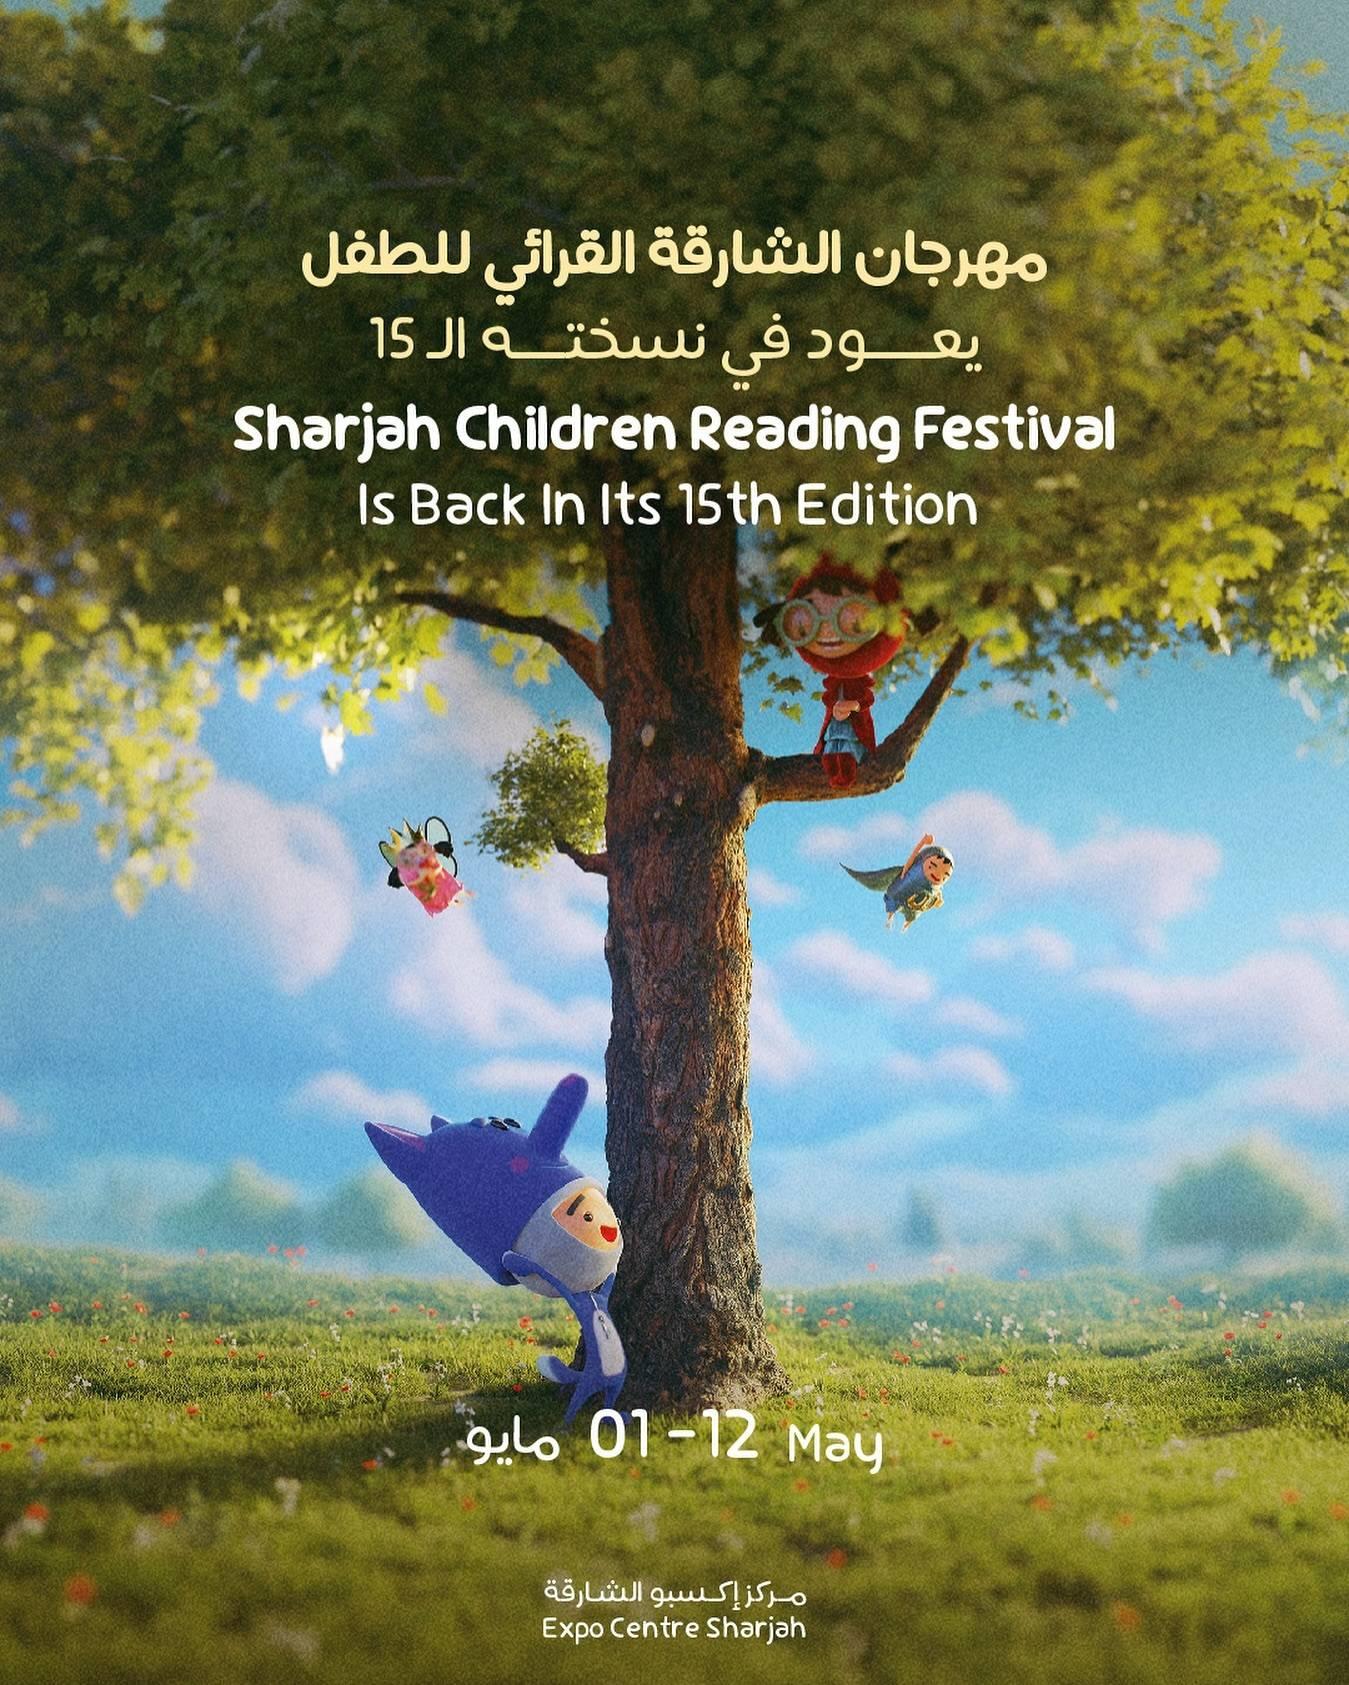 Sharjah Children Reading Festival 202437465